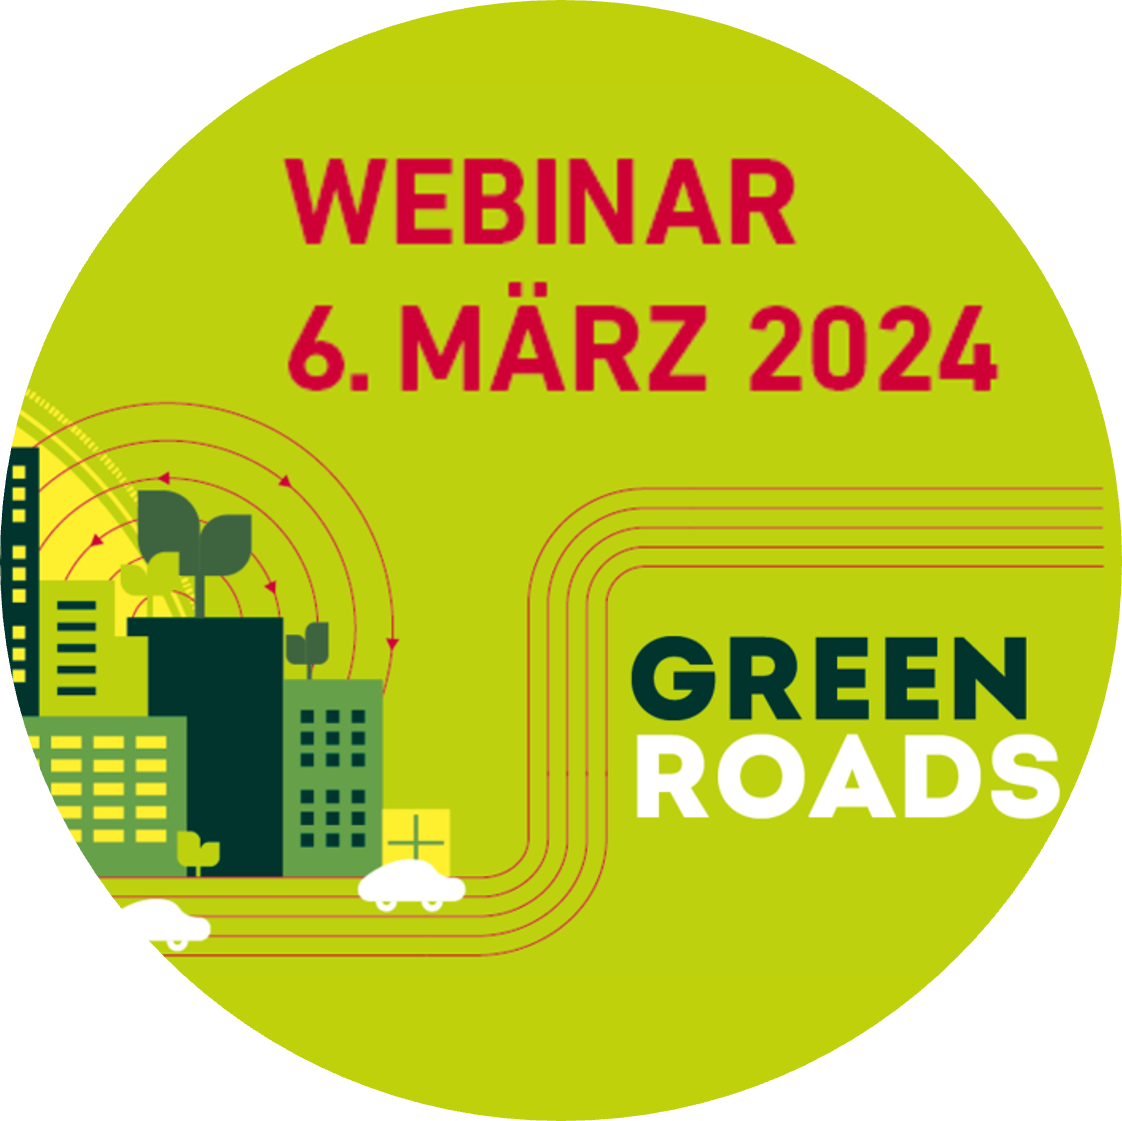 Webinar zu Nachhaltige Strassen - Green Roads